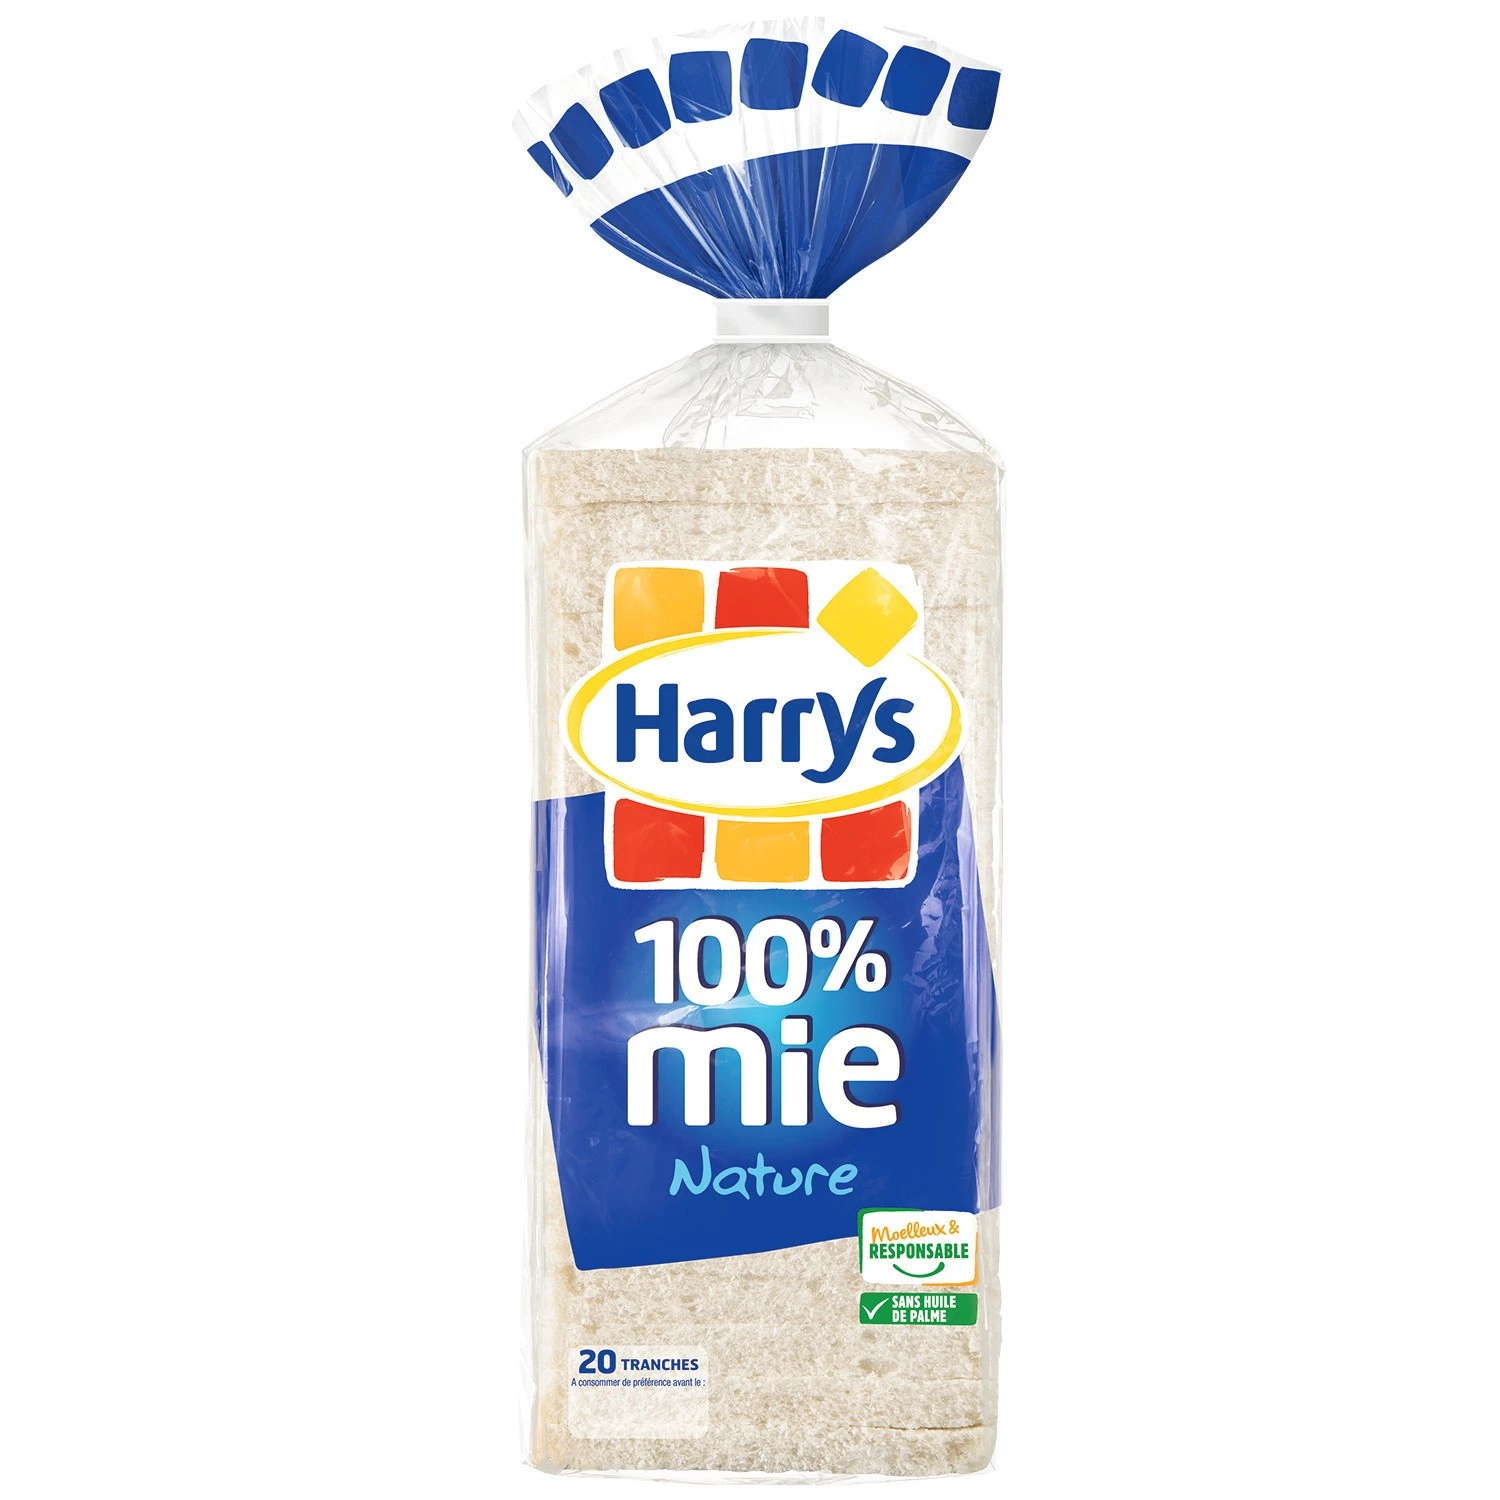 Gewoon brood zonder korst x20 500g - HARRY'S